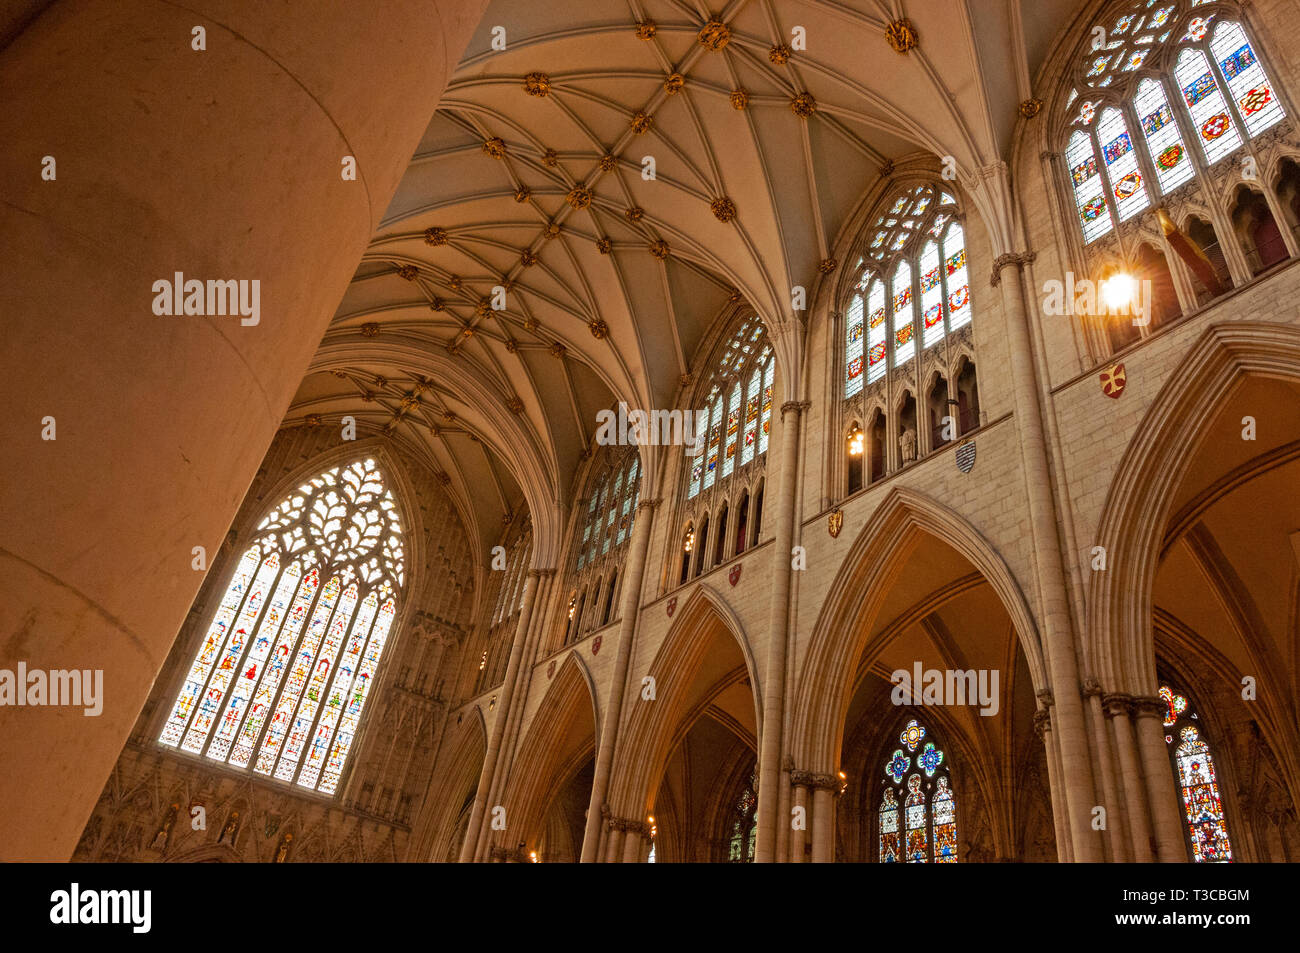 Intérieur de la cathédrale de York, York, Angleterre Banque D'Images